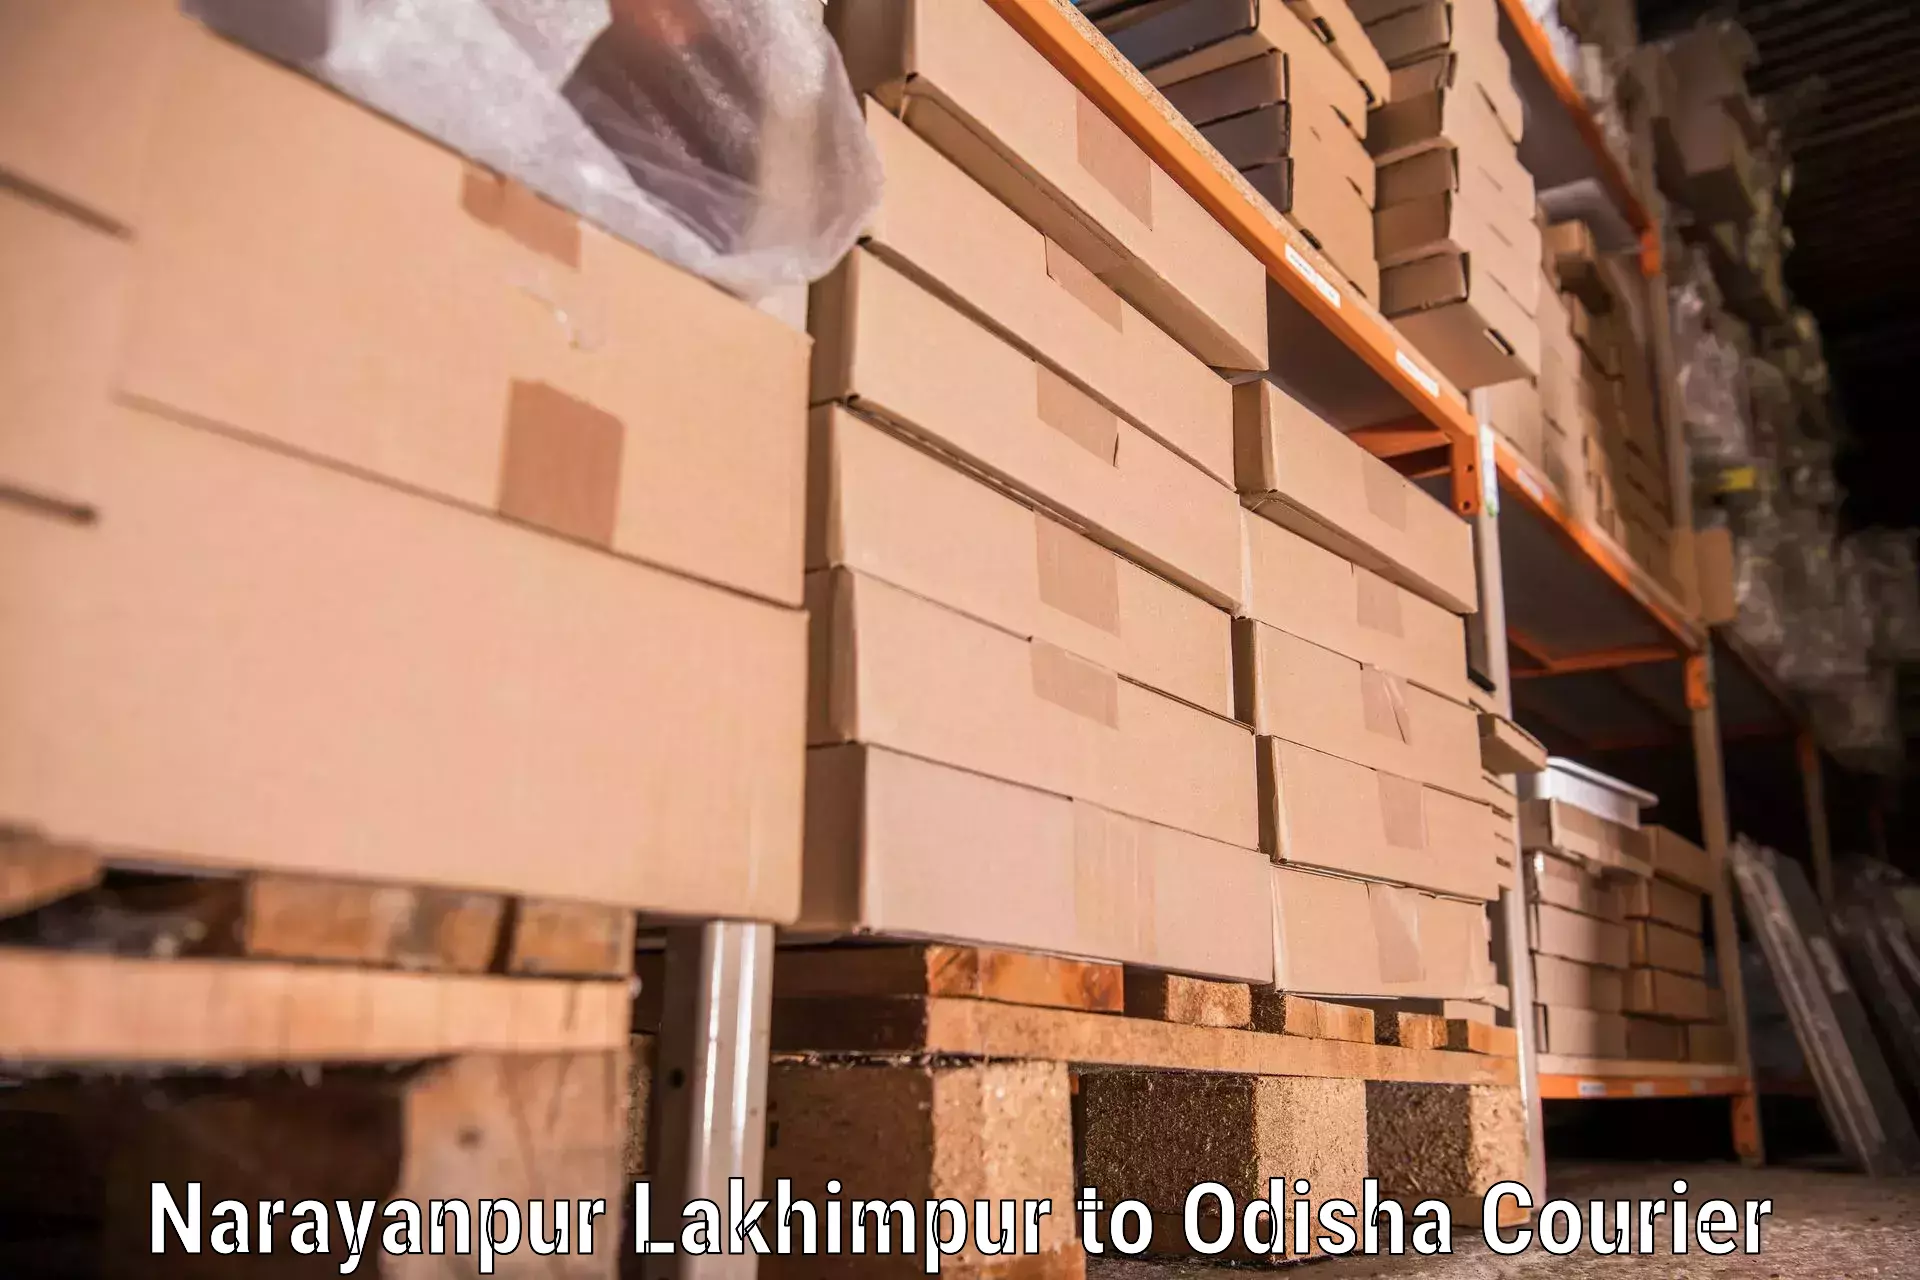 Efficient furniture movers in Narayanpur Lakhimpur to Udayagiri Kandhamal